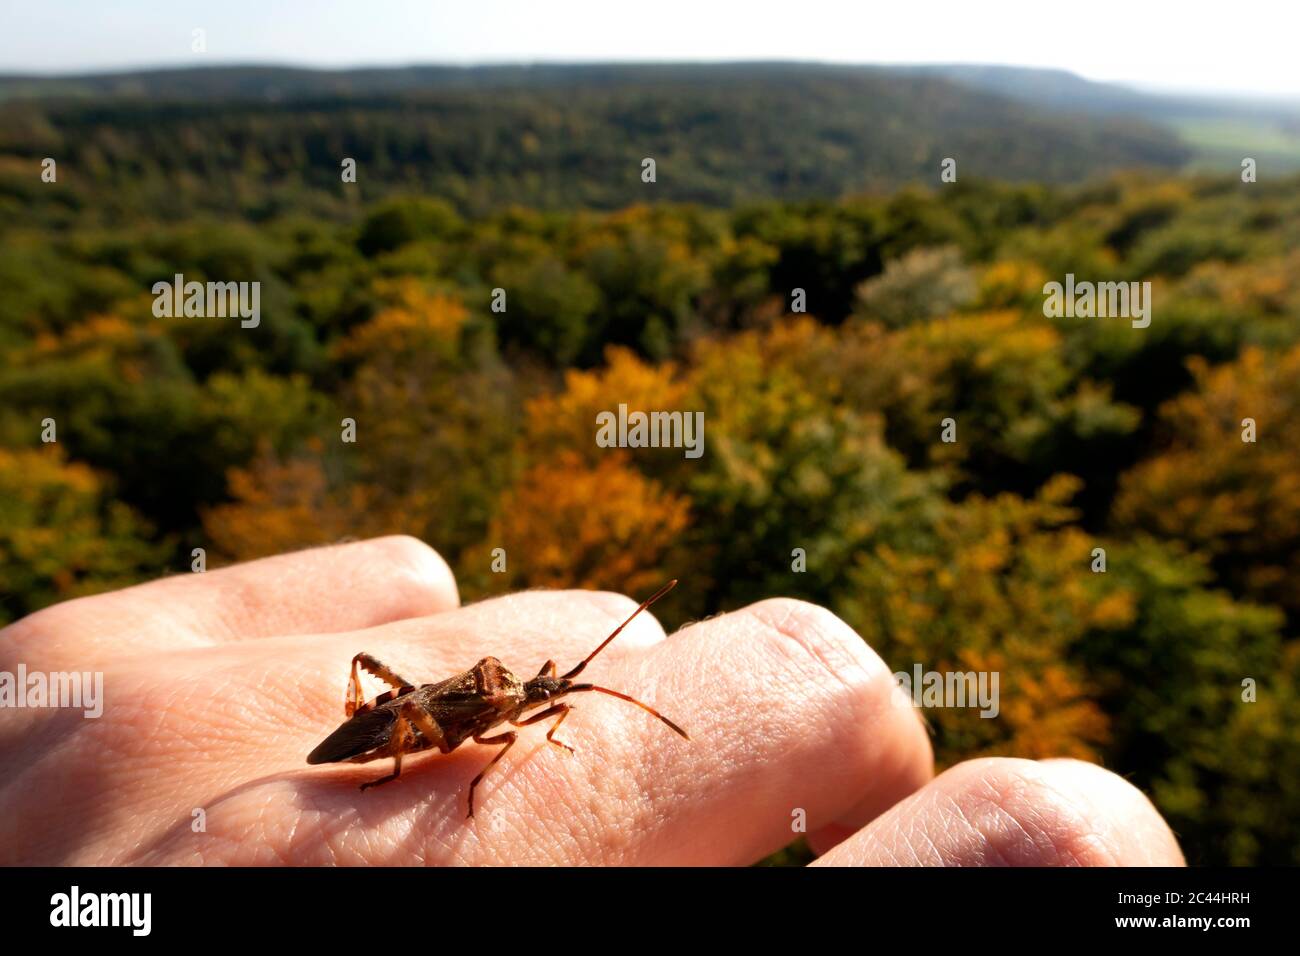 Deutschland, Bayern, Ebrach, Insekt kriecht auf der menschlichen Hand Stockfoto